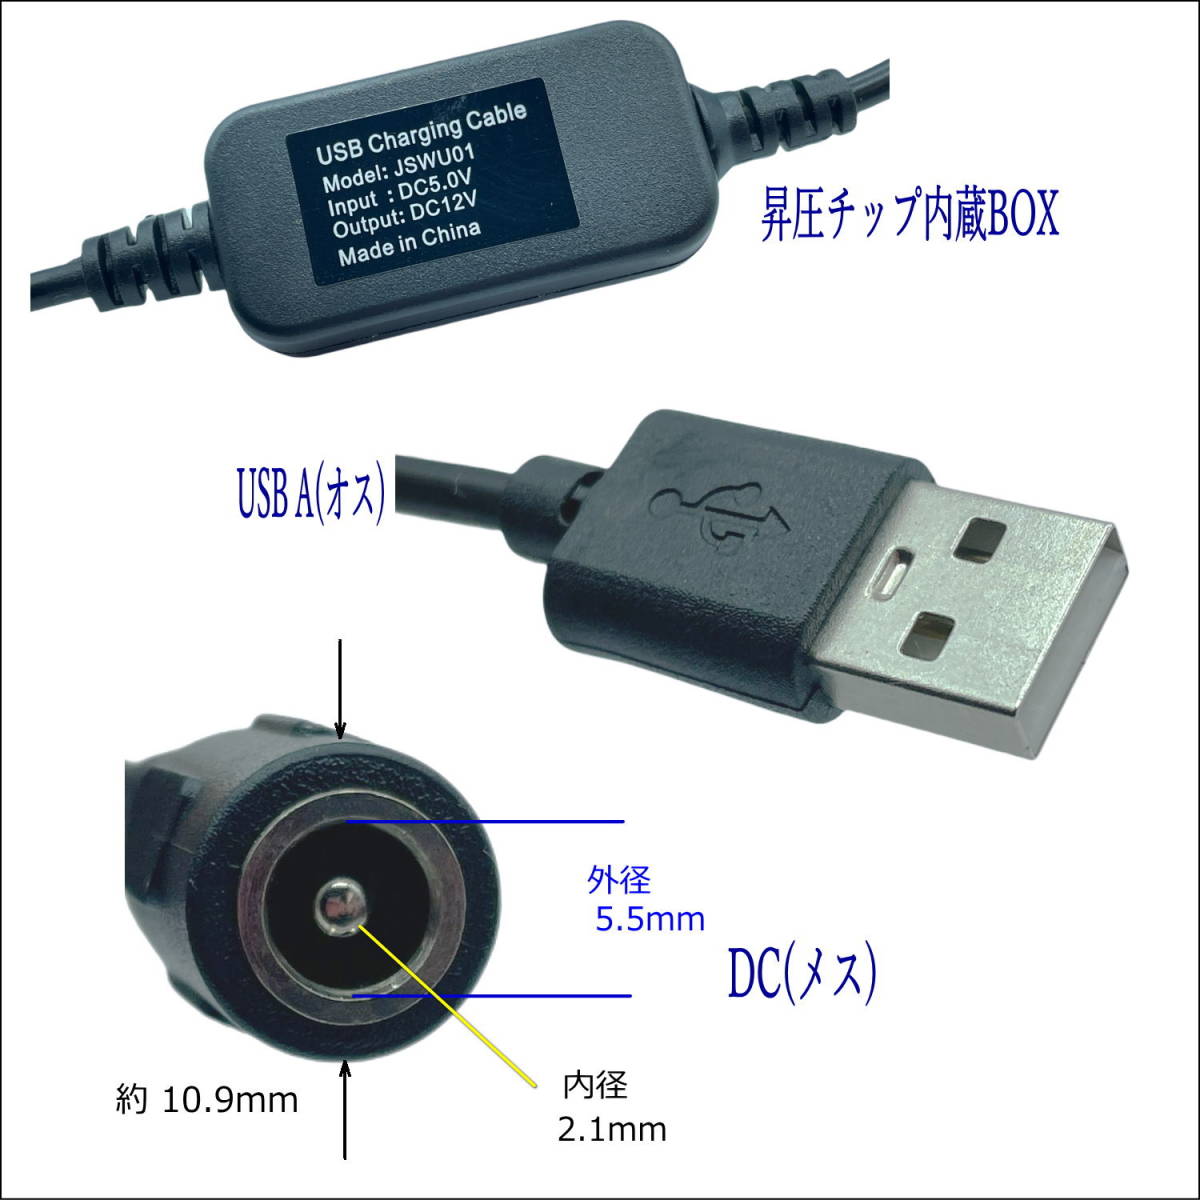 △USB-DC(5.5/2.1)(メス) 5V→12V昇圧ケーブル 12V/1Aまで DC延長(オス/メス) 36cm LED照明や監視カメラなどの小電力機器用に使用できます